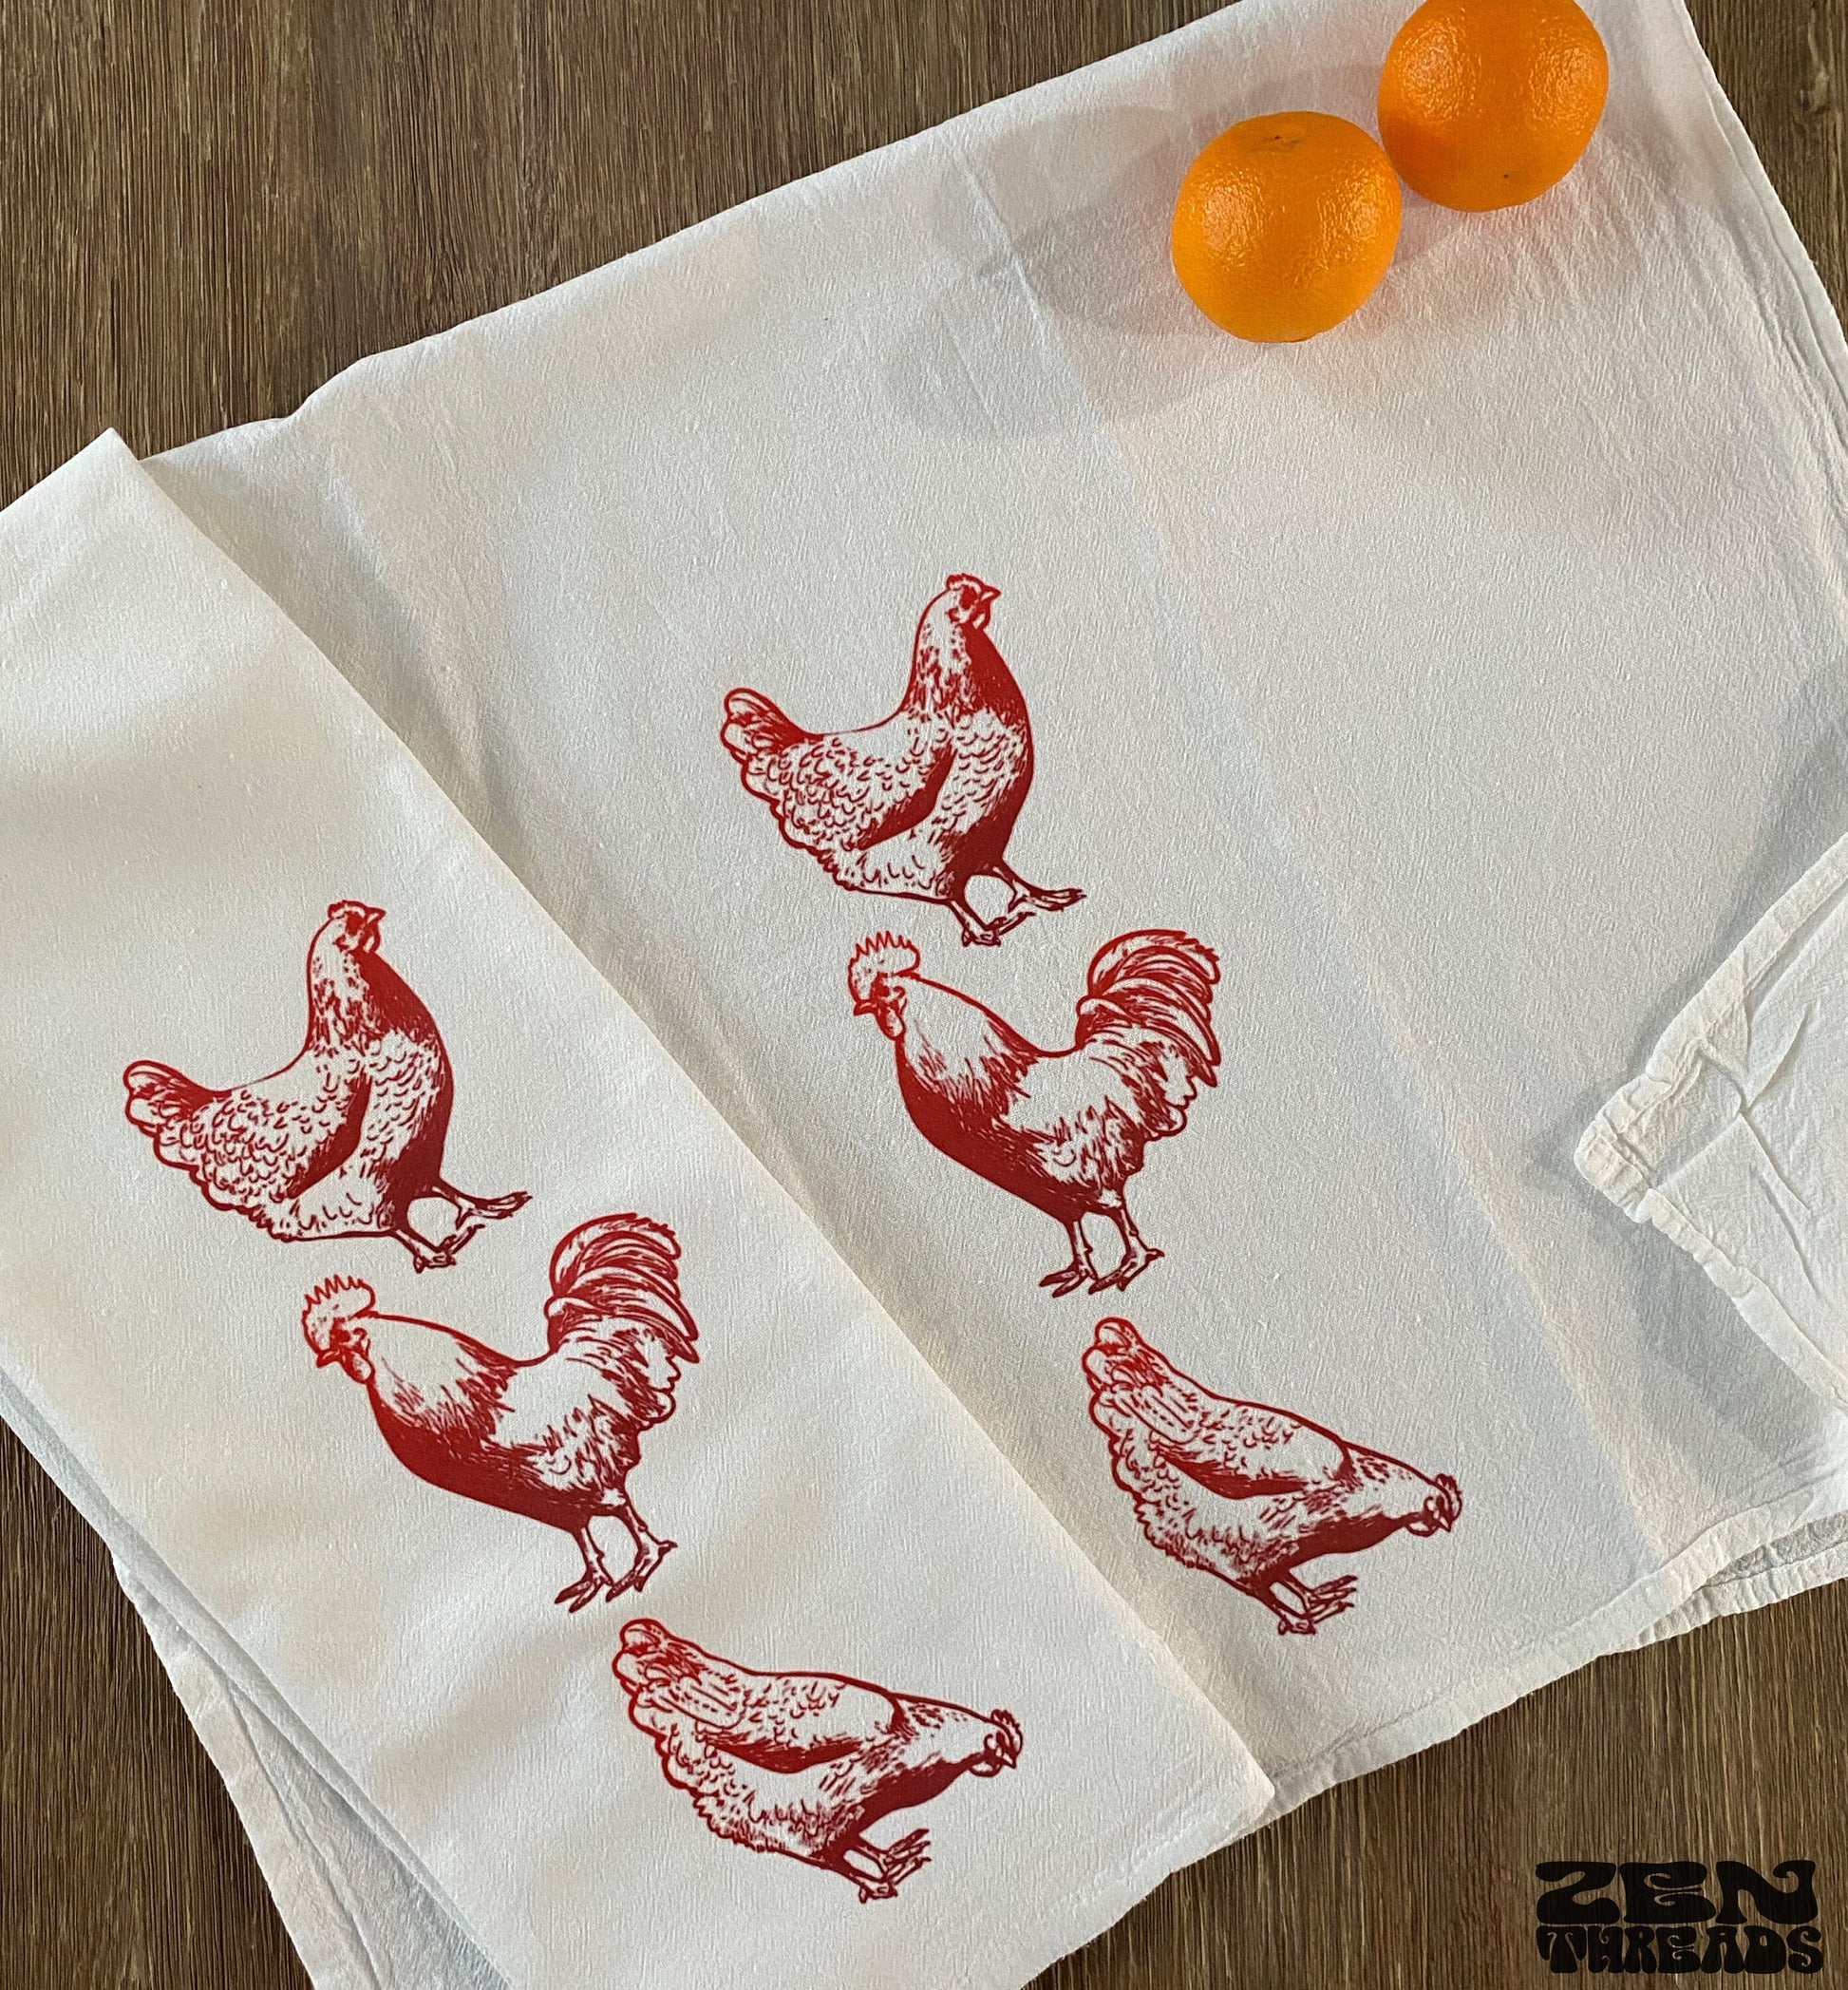 Embroidered Flour Sack Tea Towels, Vintage Inspired Flour Sack Tea